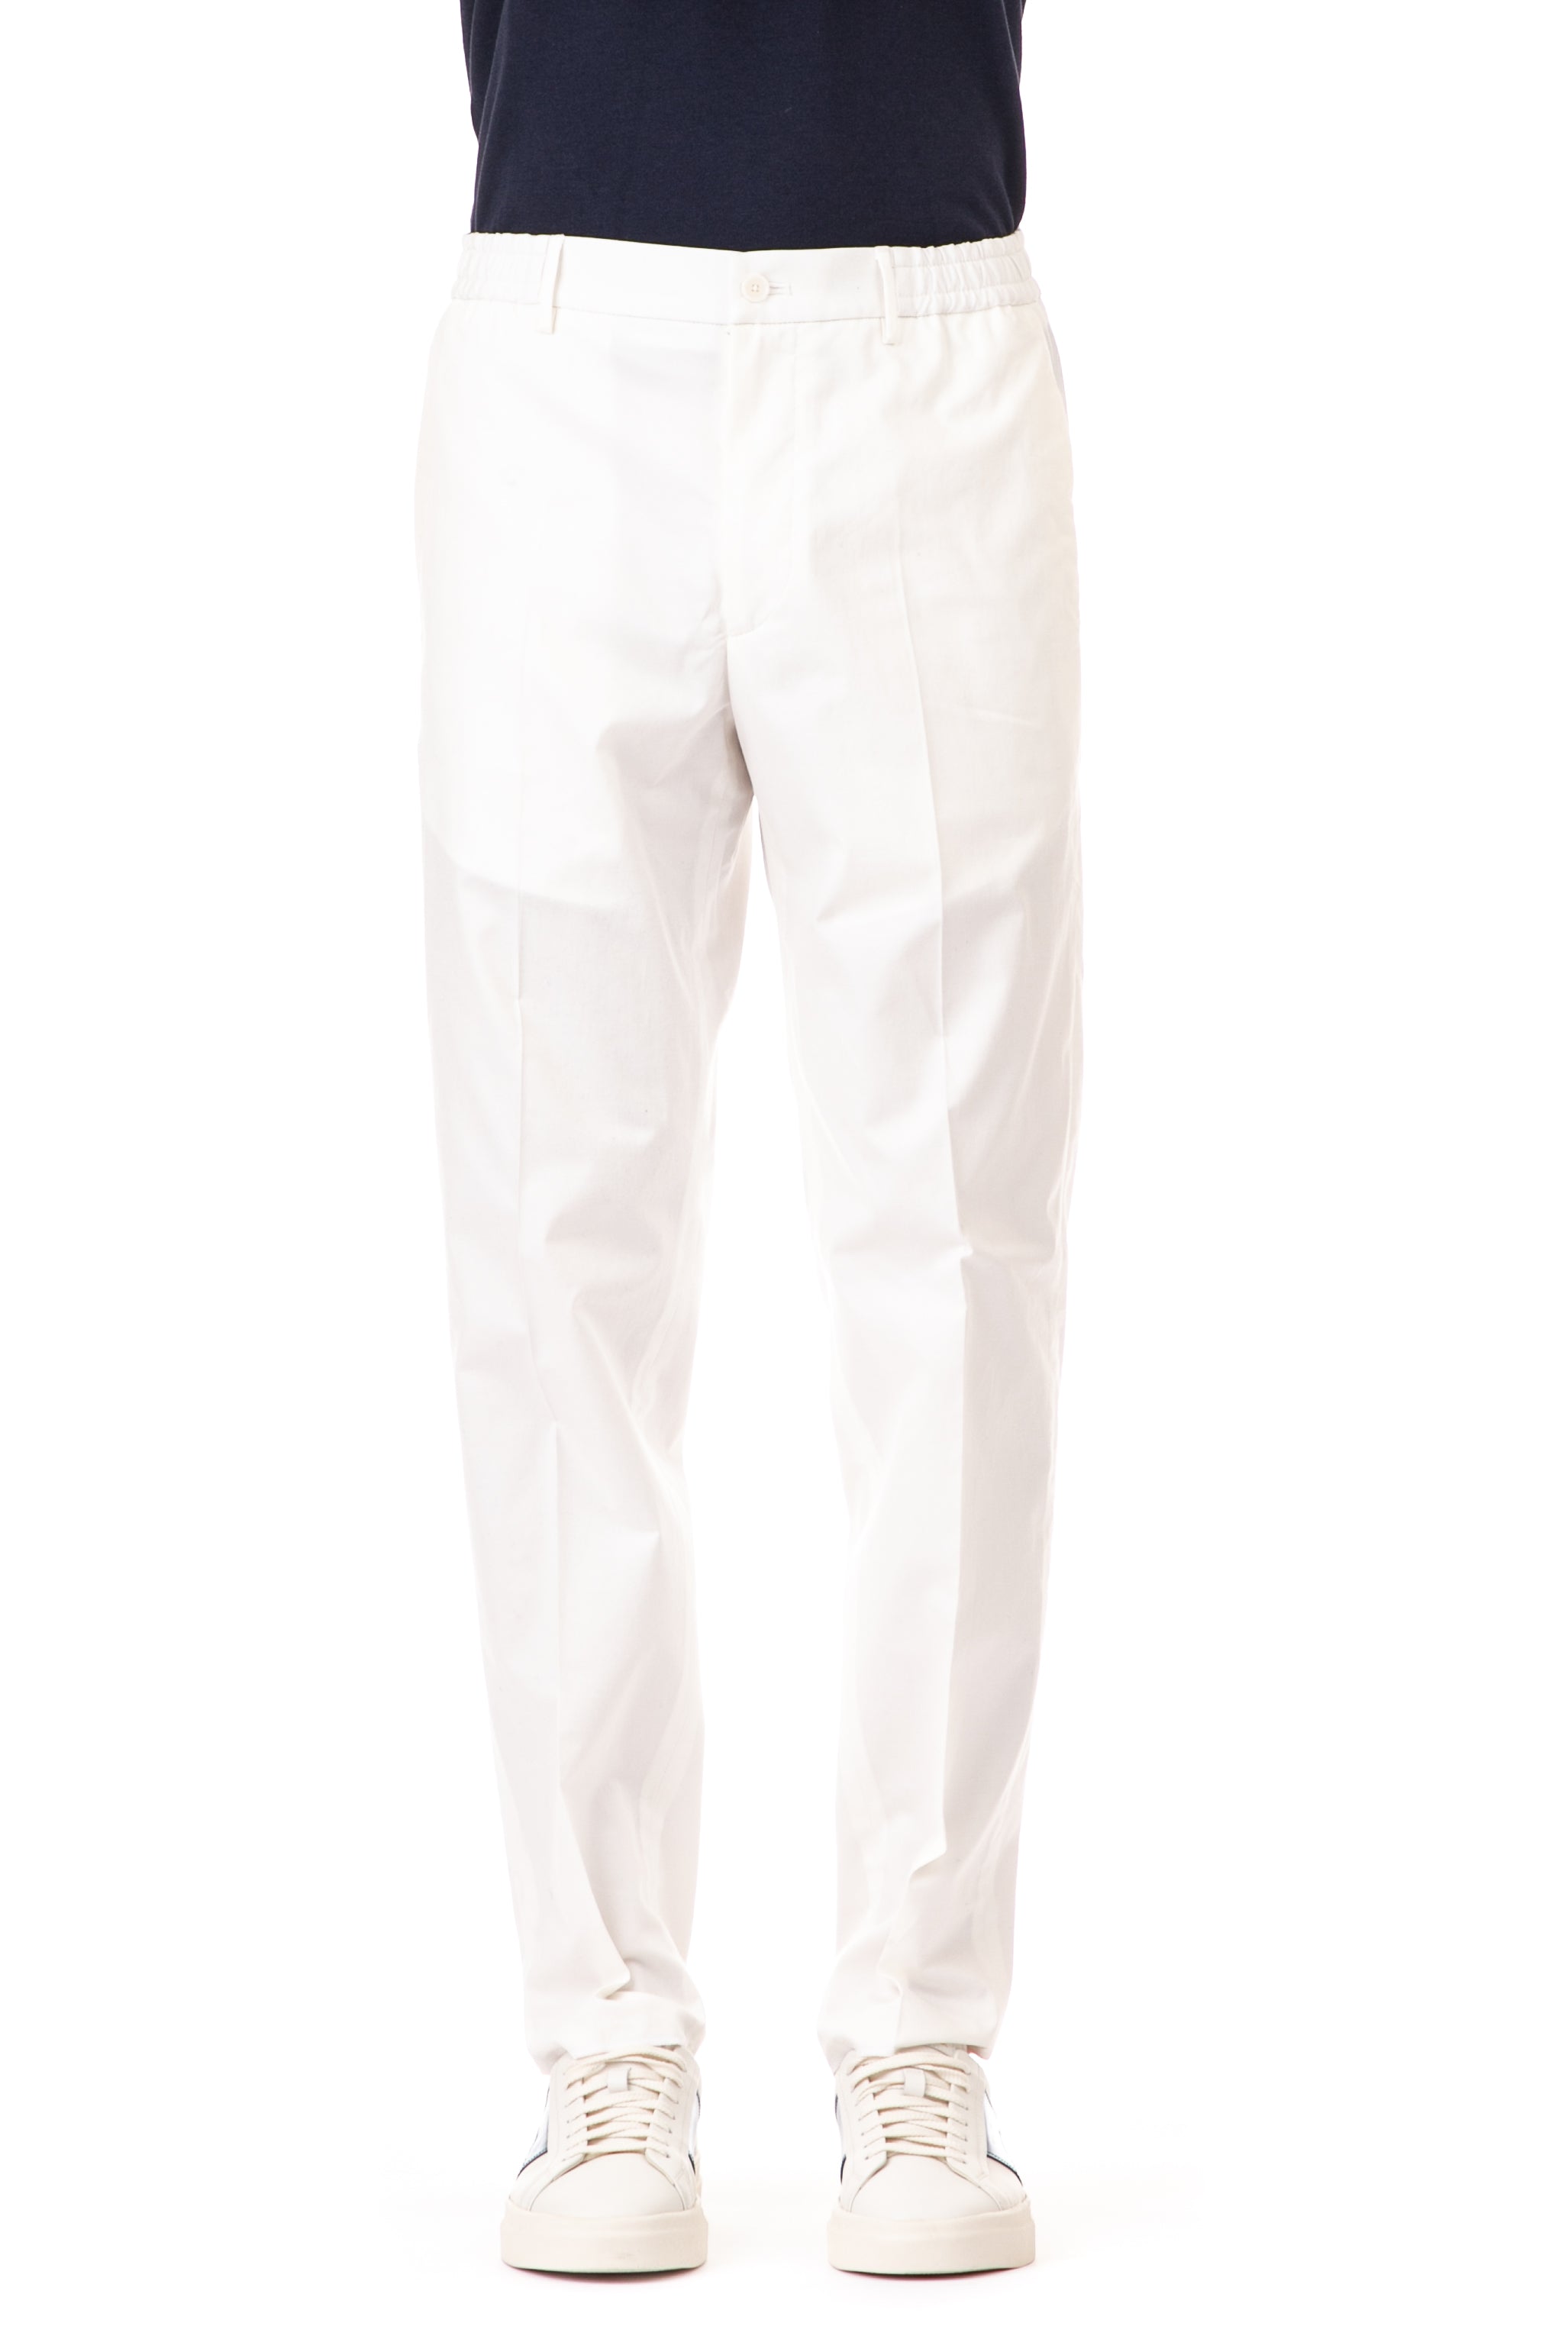 Pantalone in cotone con elastico in vita mod. garcon